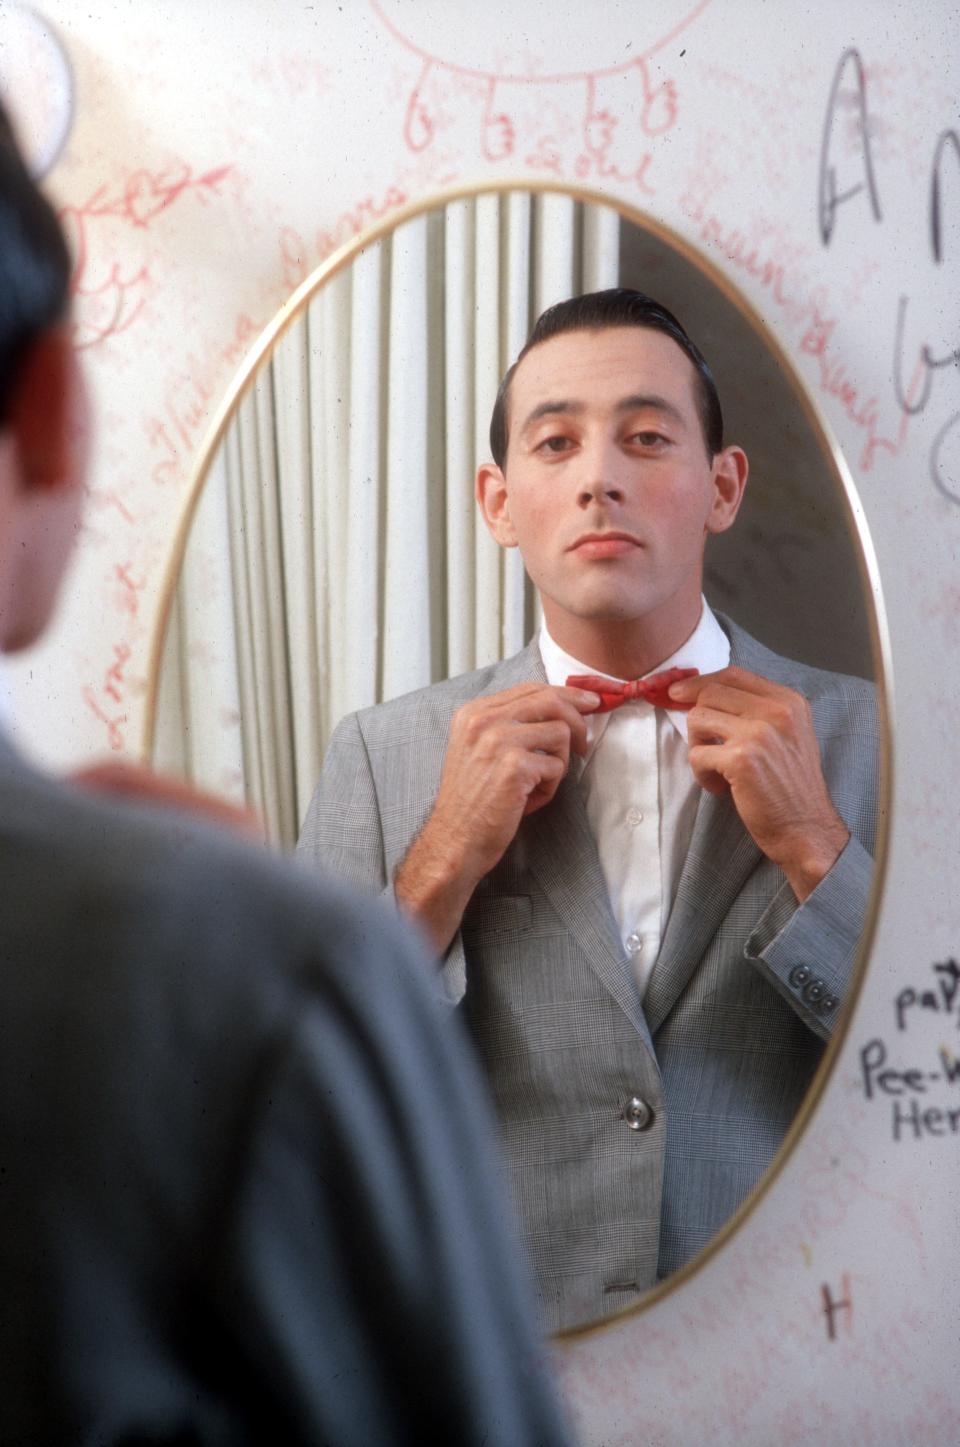 Paul Reubens dressed as Pee-wee Herman in a mirror